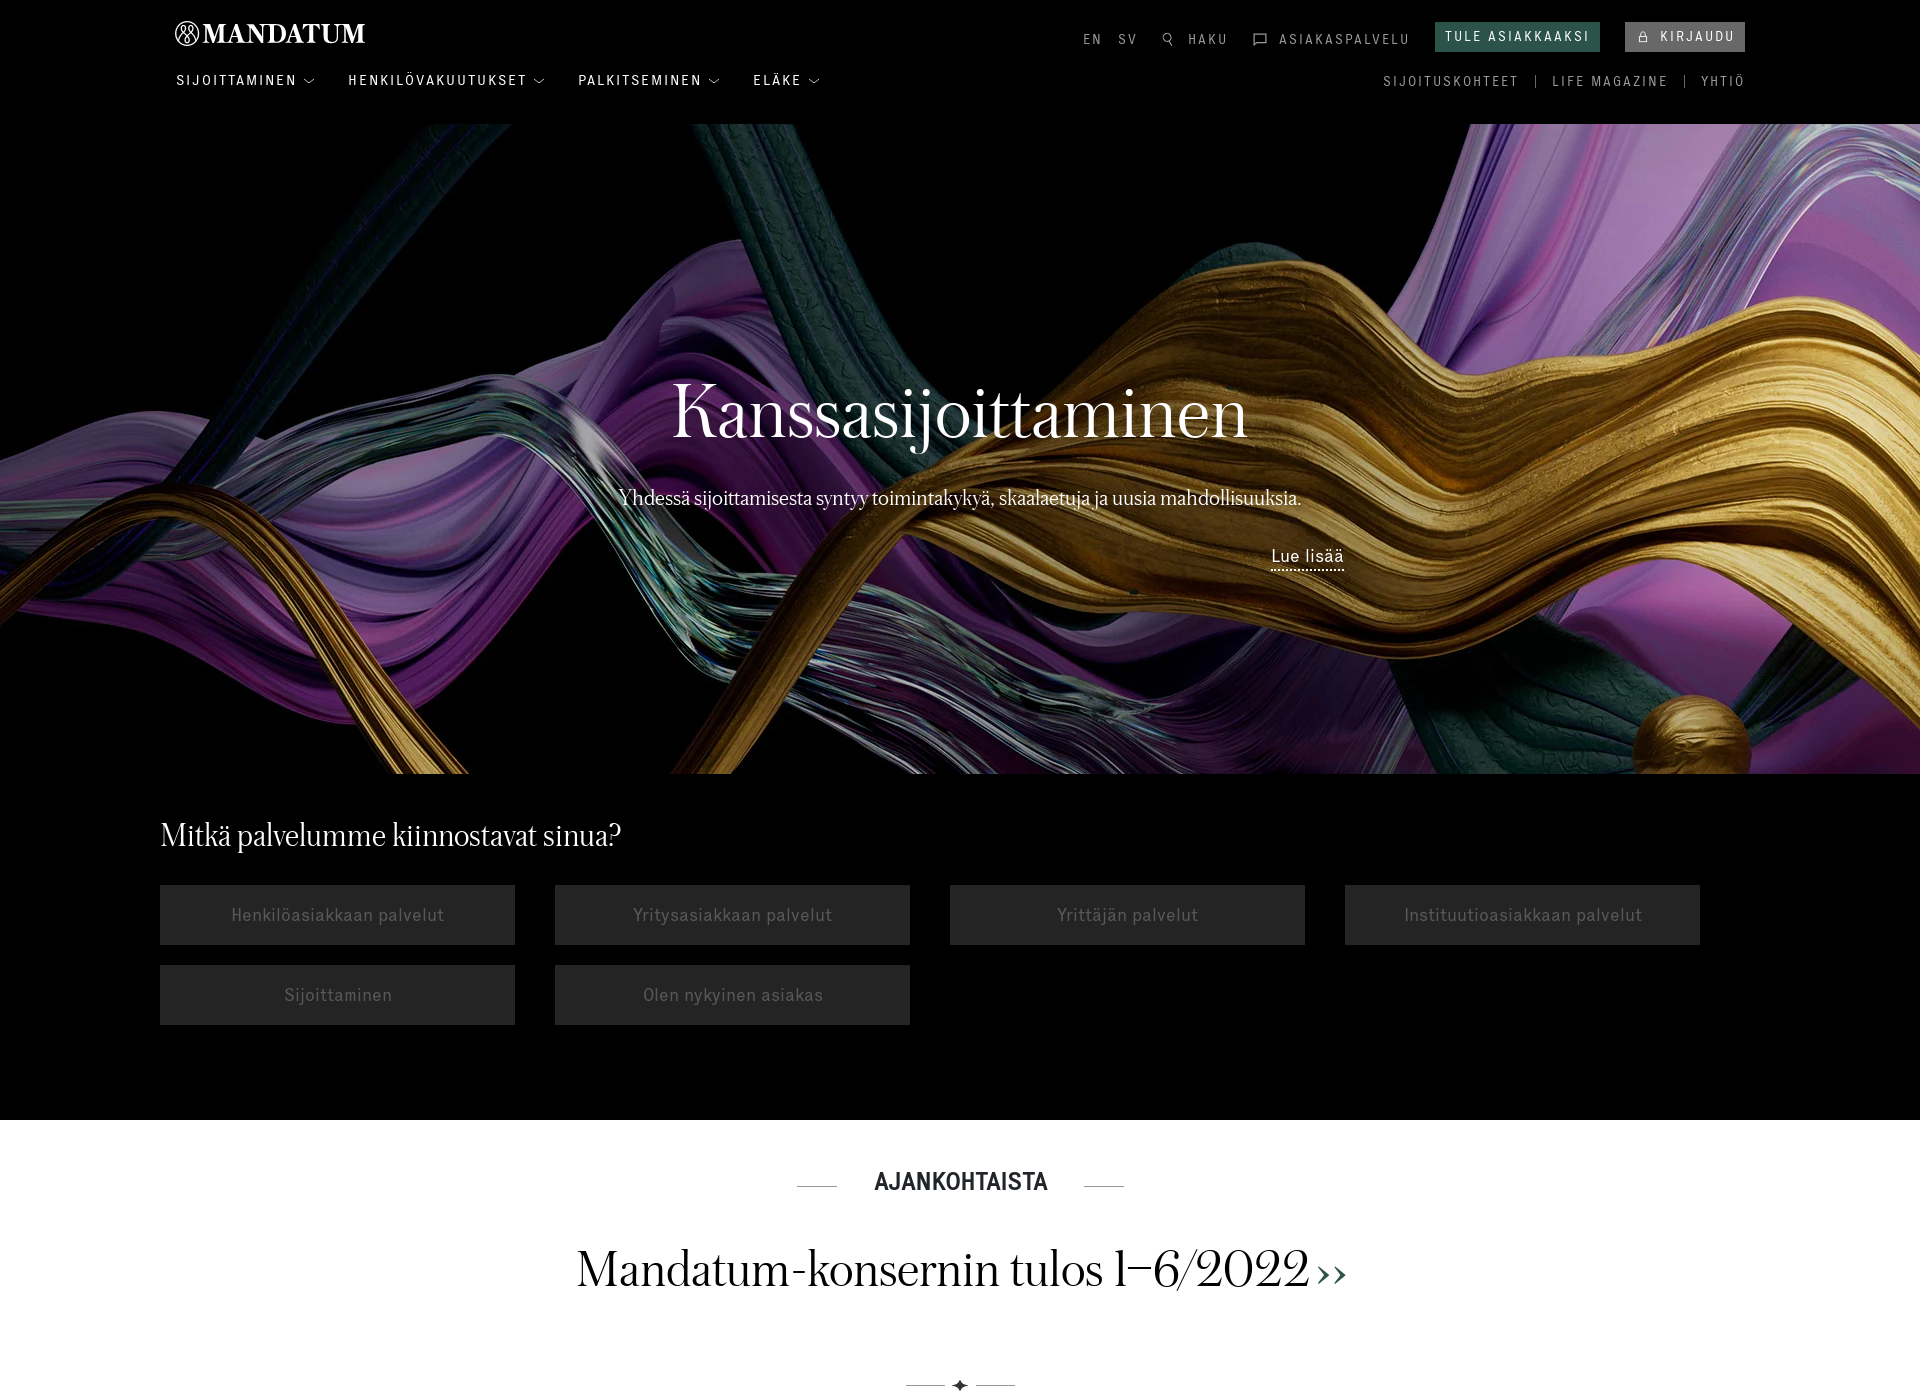 Screenshot for sijoitussidonnainenvakuutus.fi